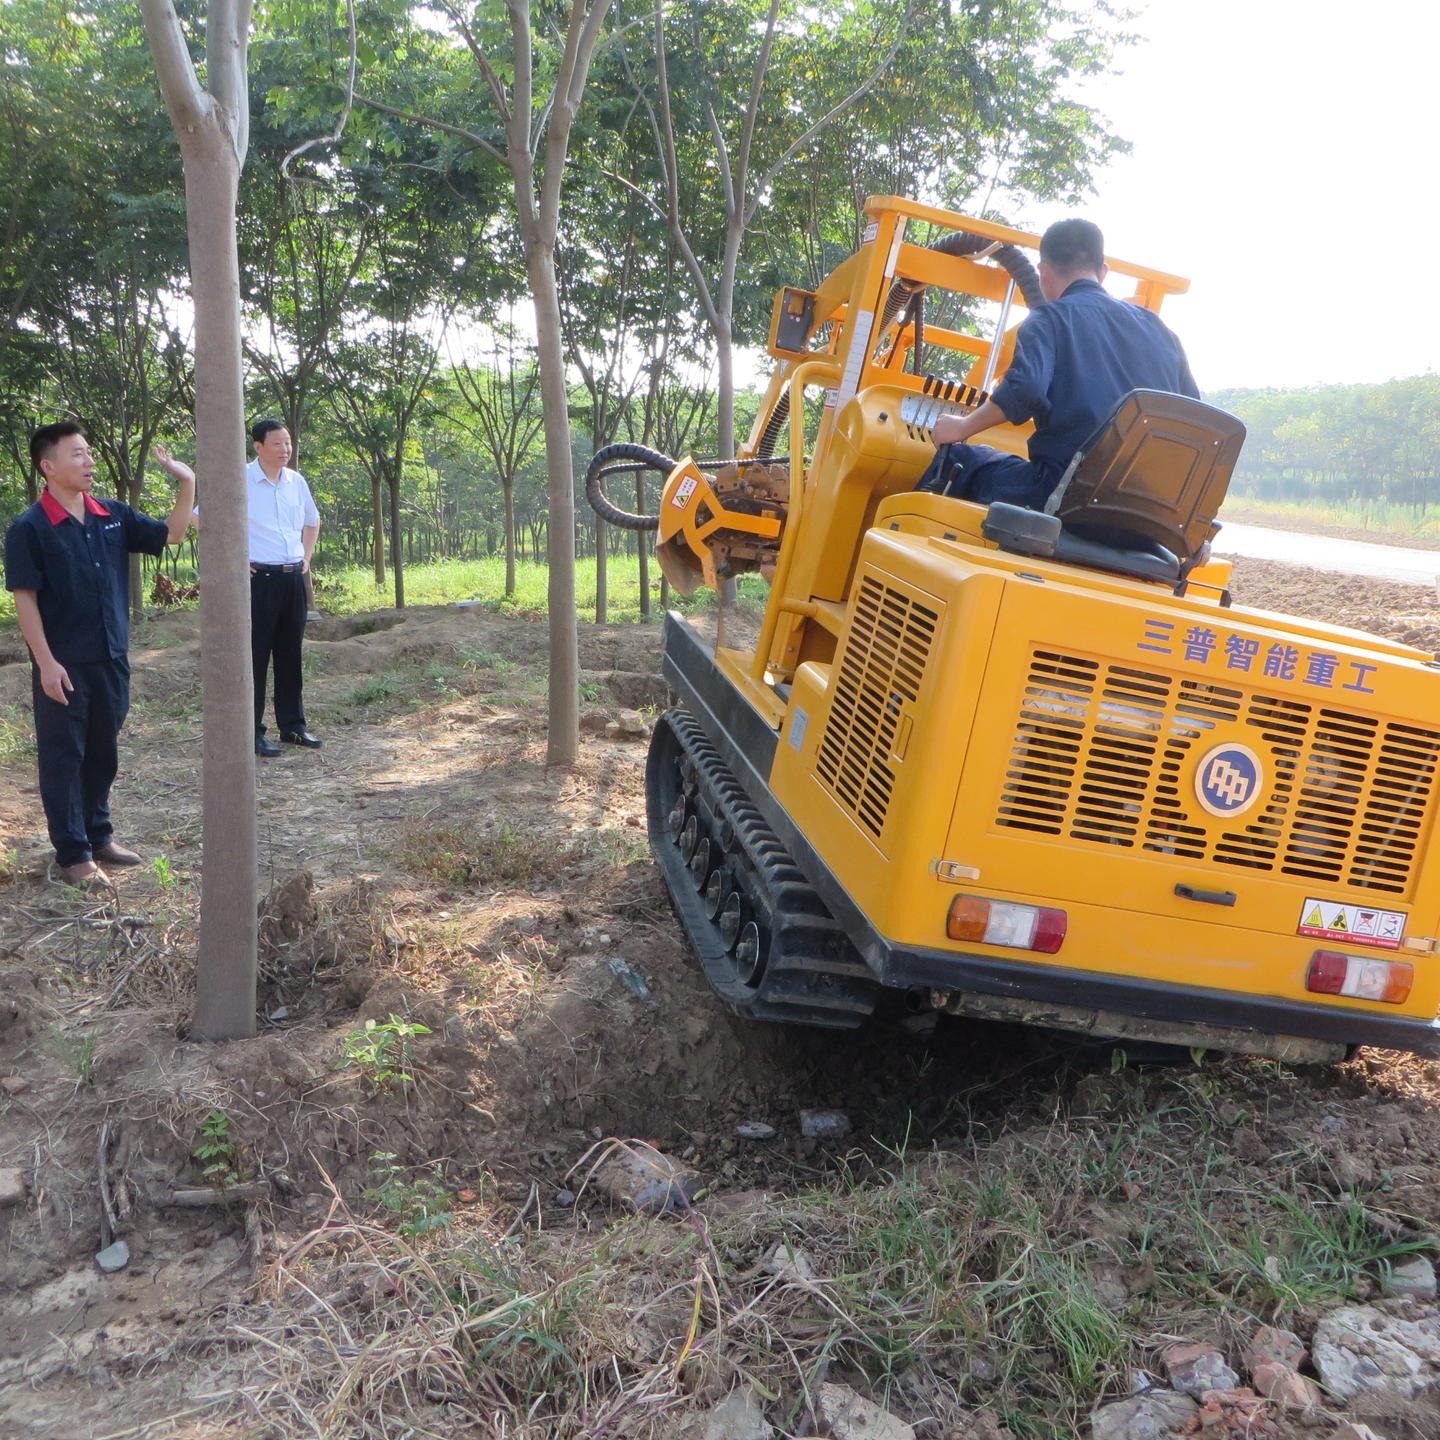 三普挖树机价格三普起树机耐不耐用 林业机械